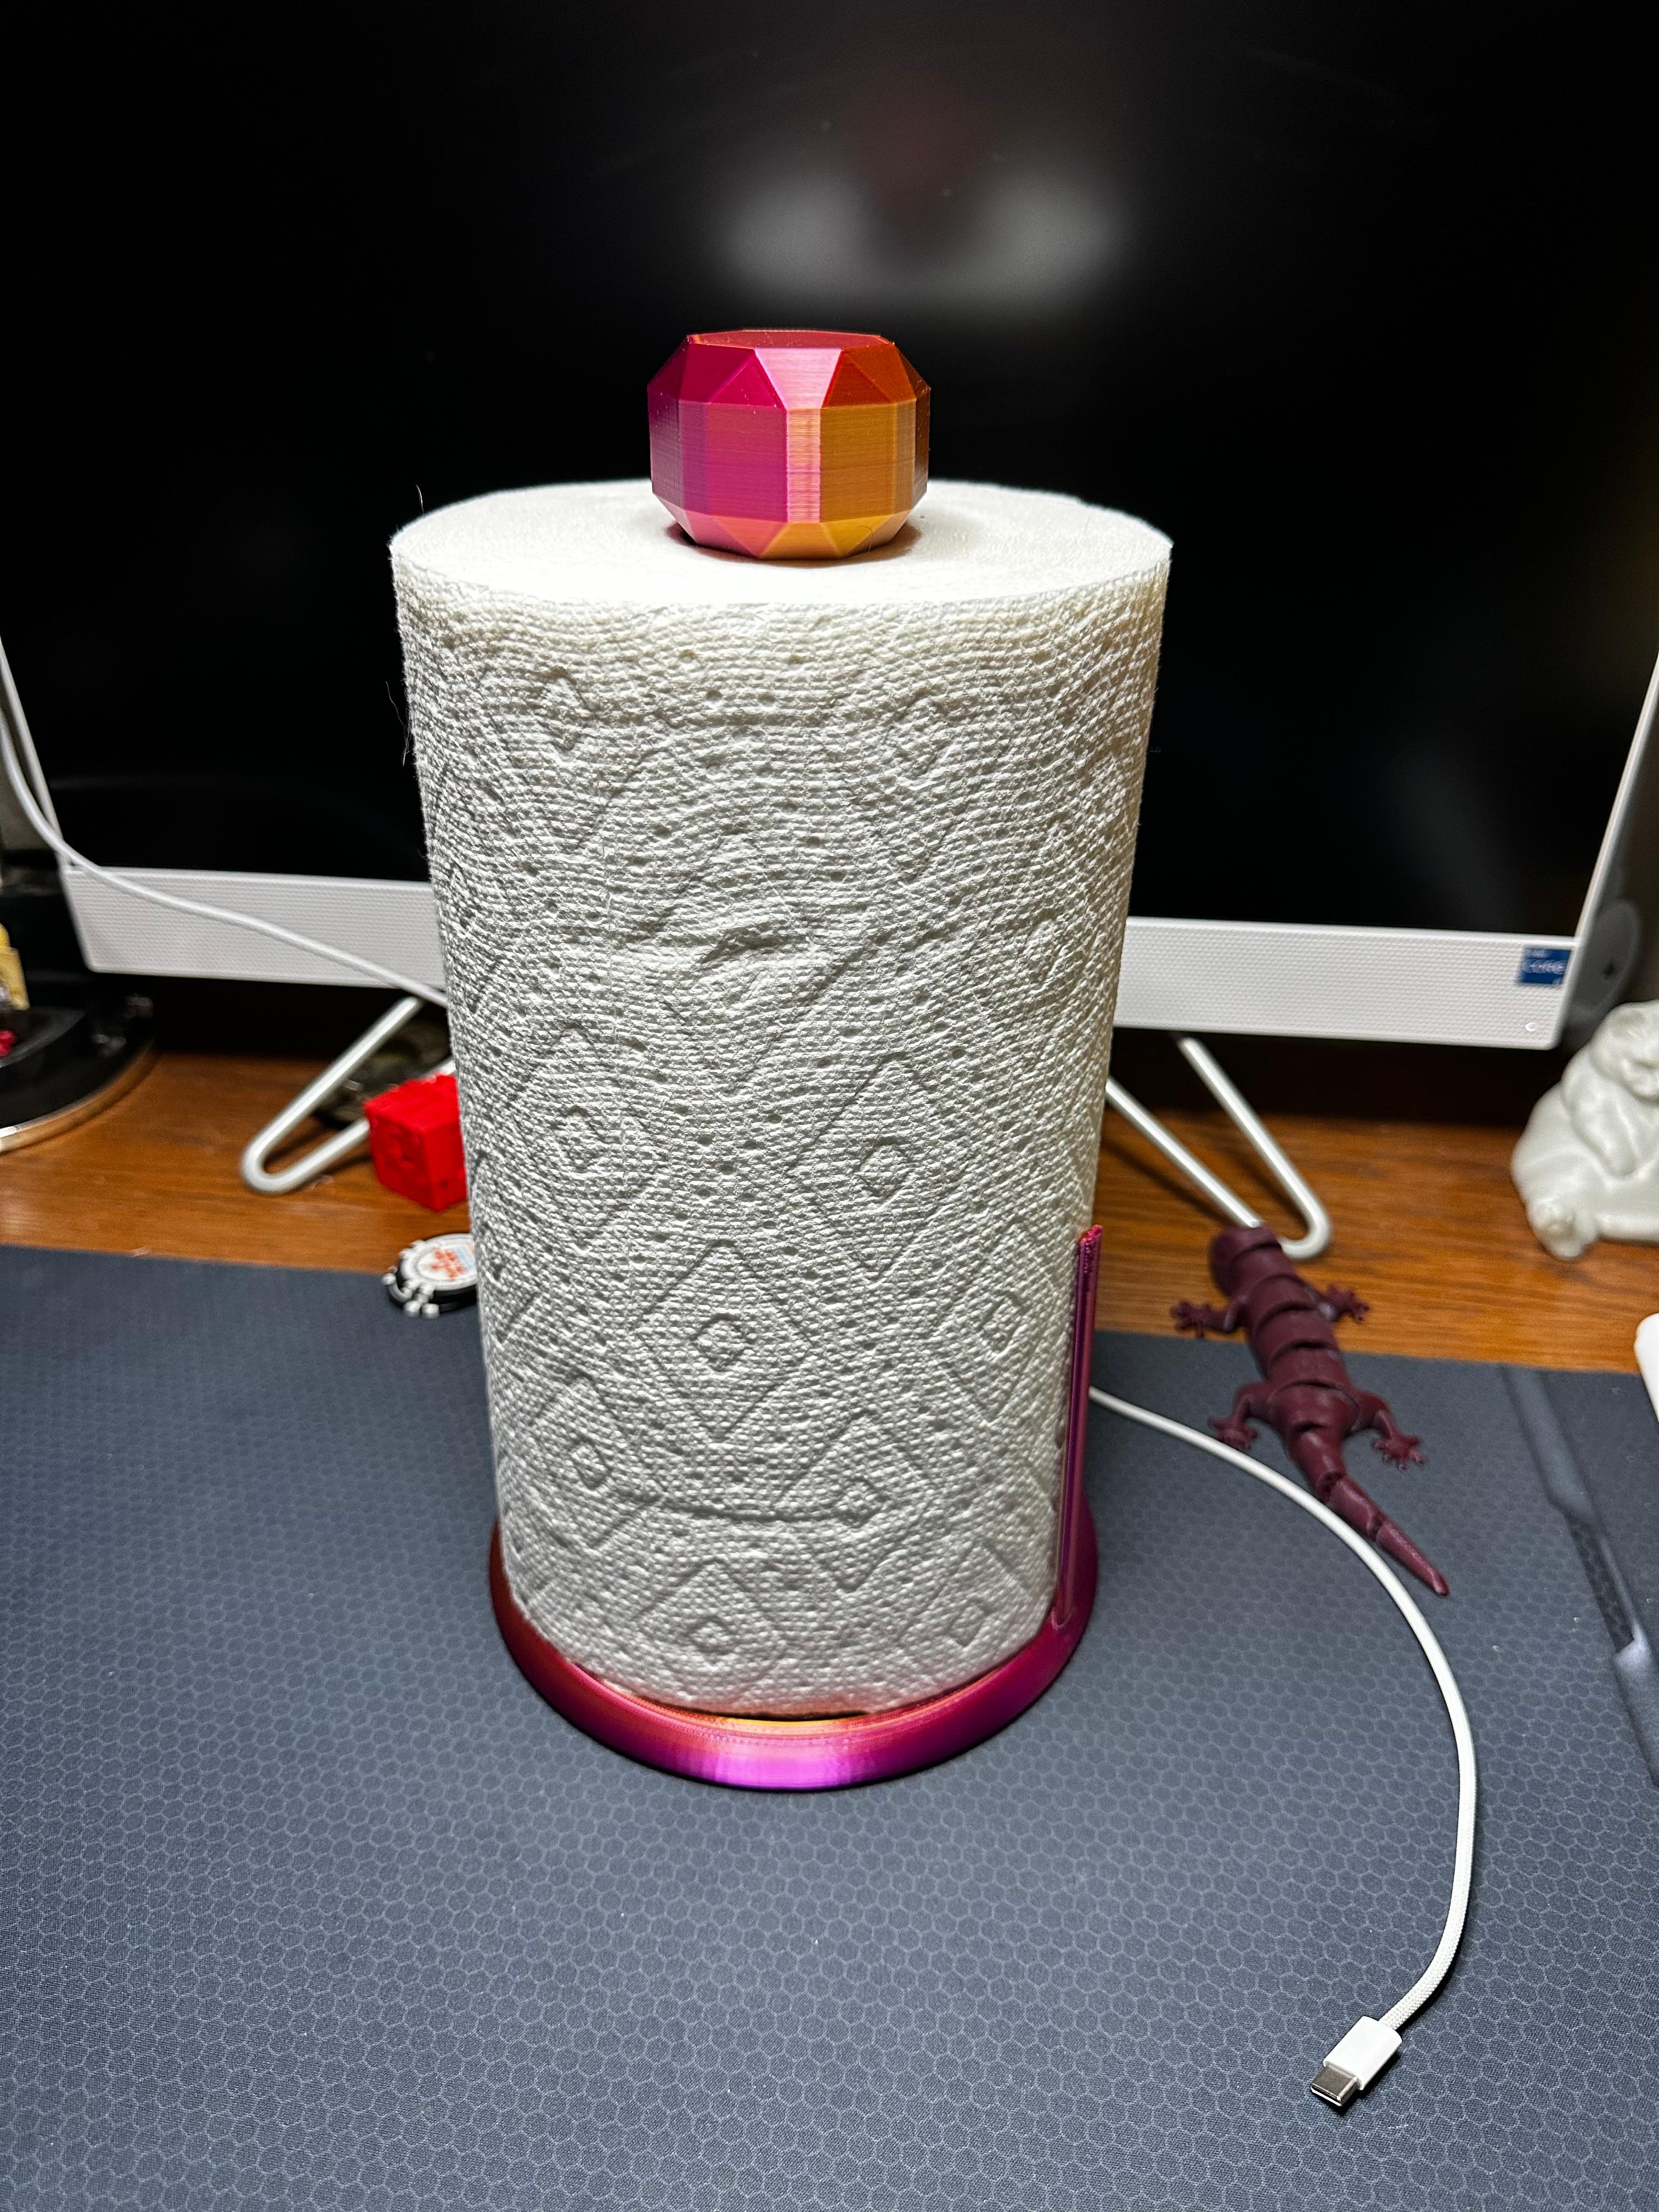 Paper towel holder V4 3d model